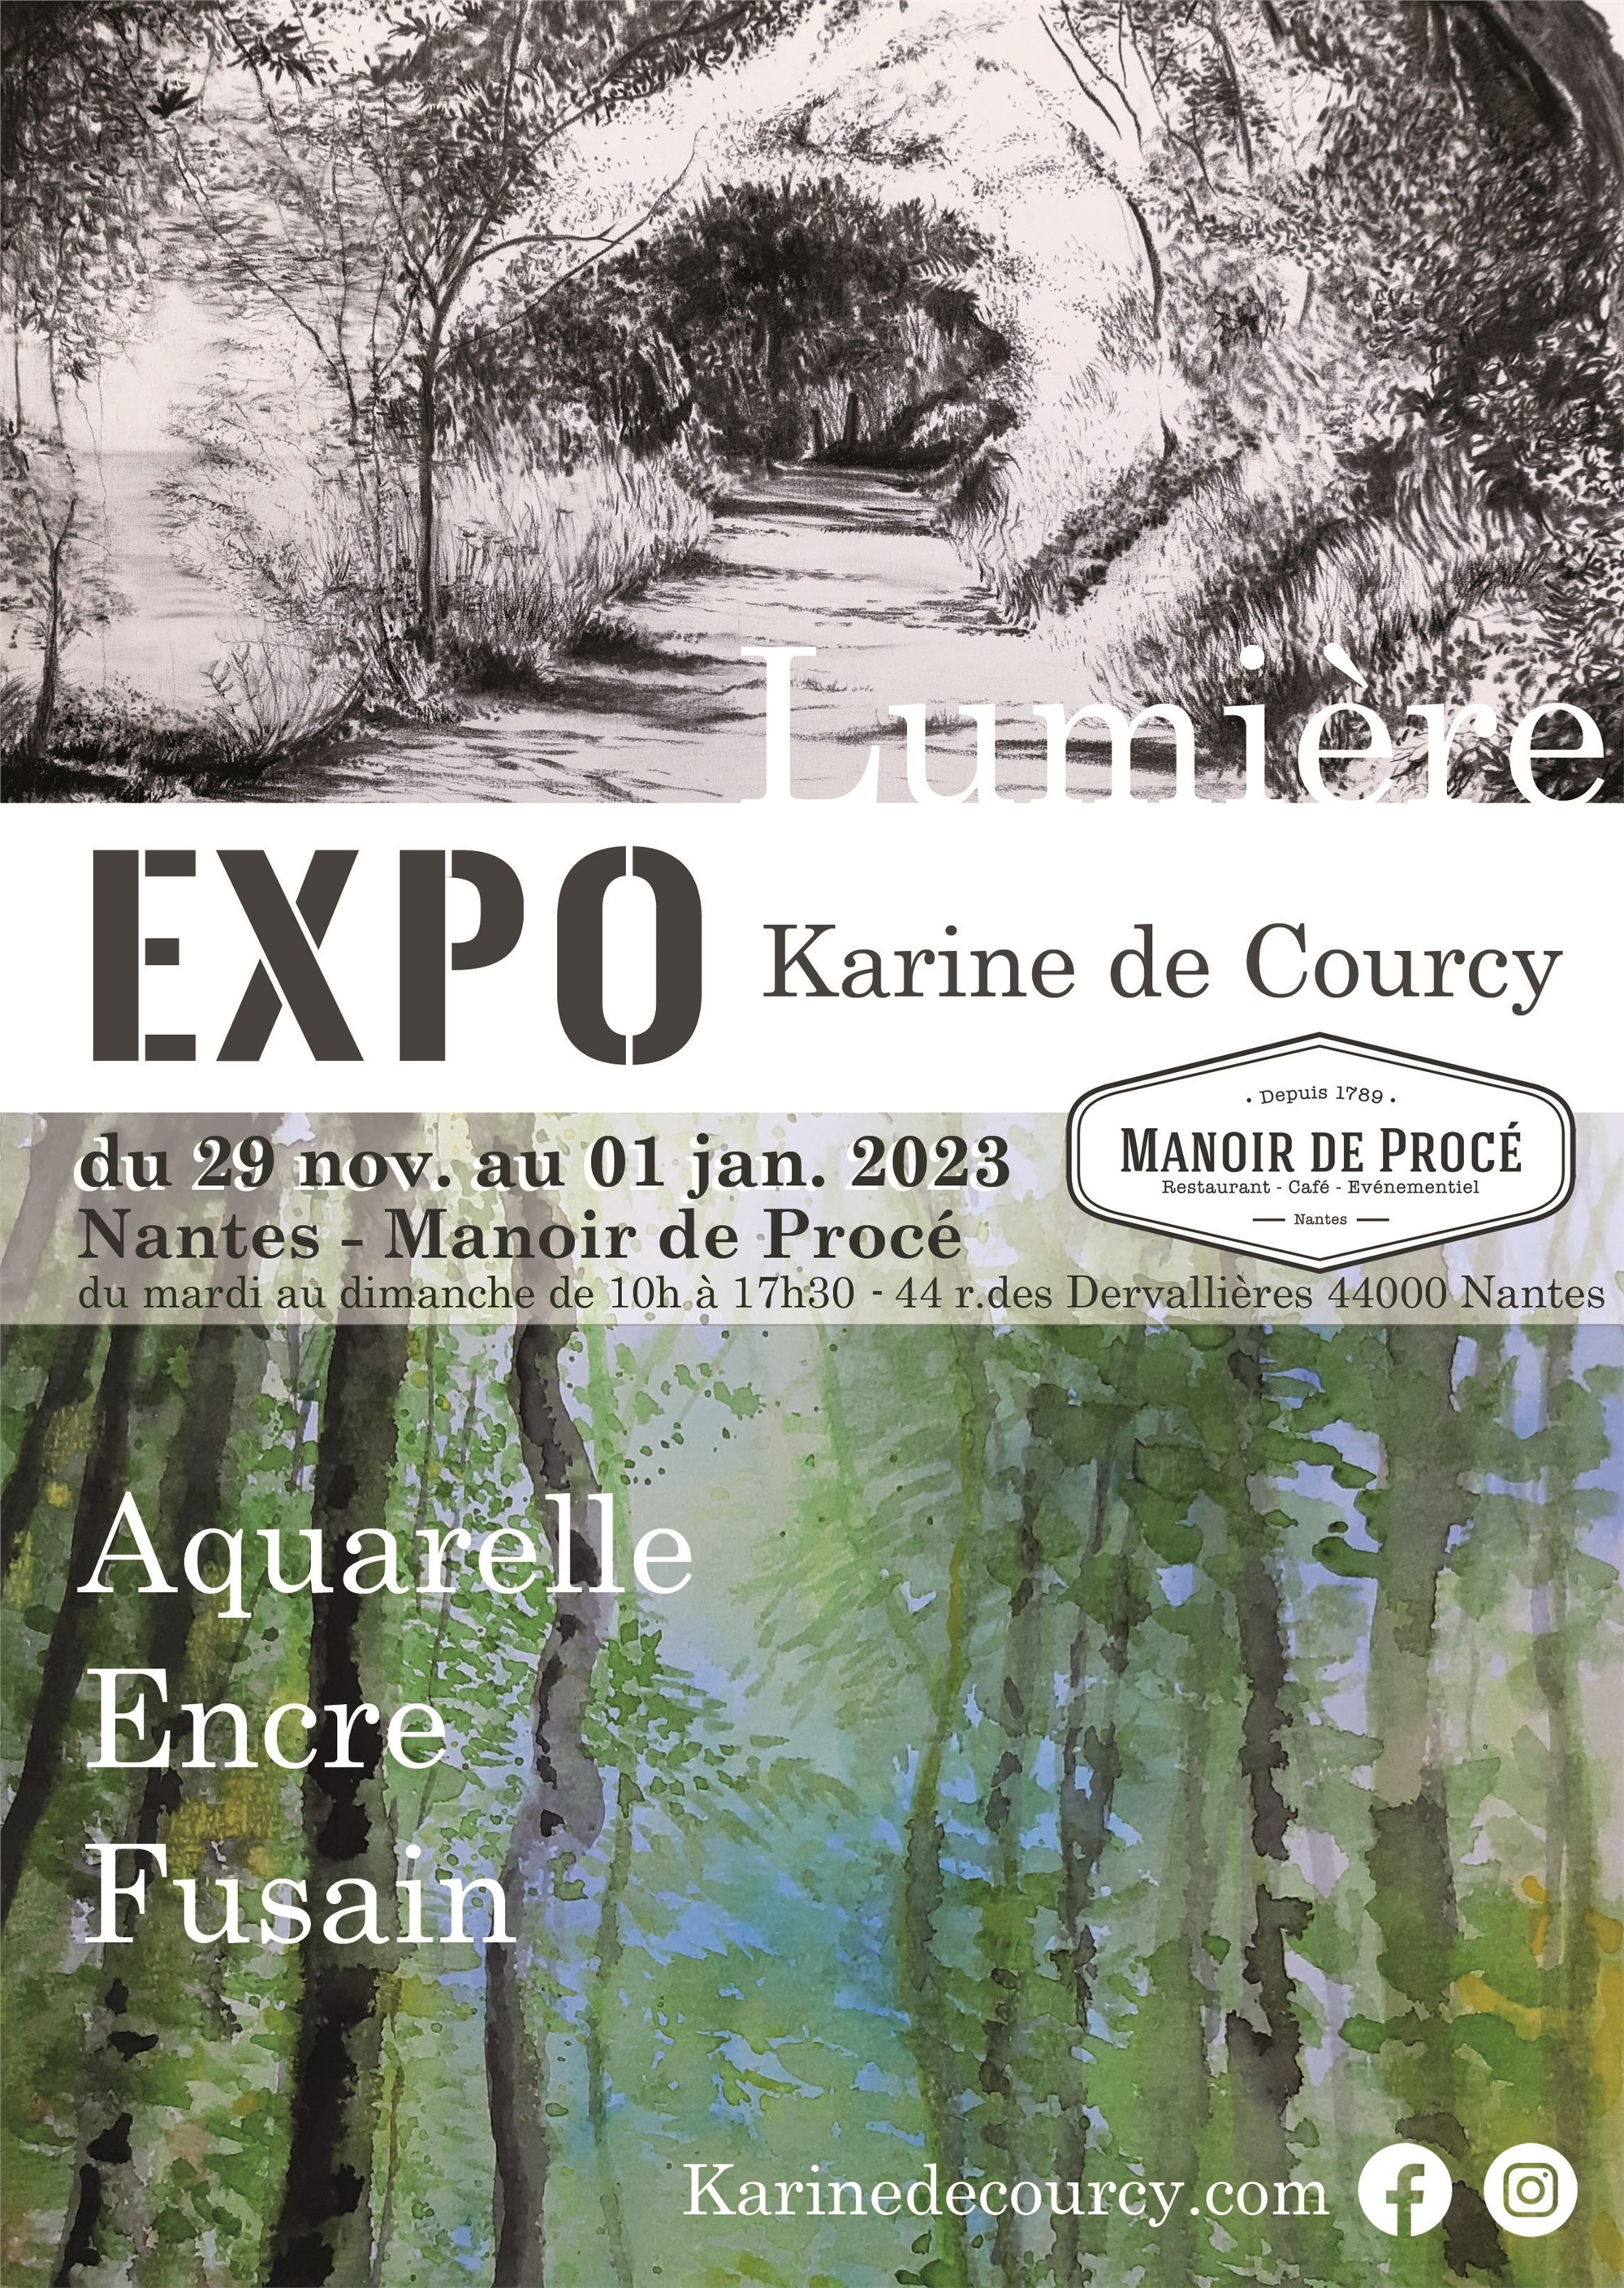 EXPO du 29 nov au 1er jan.2023 © Karine de Courcy